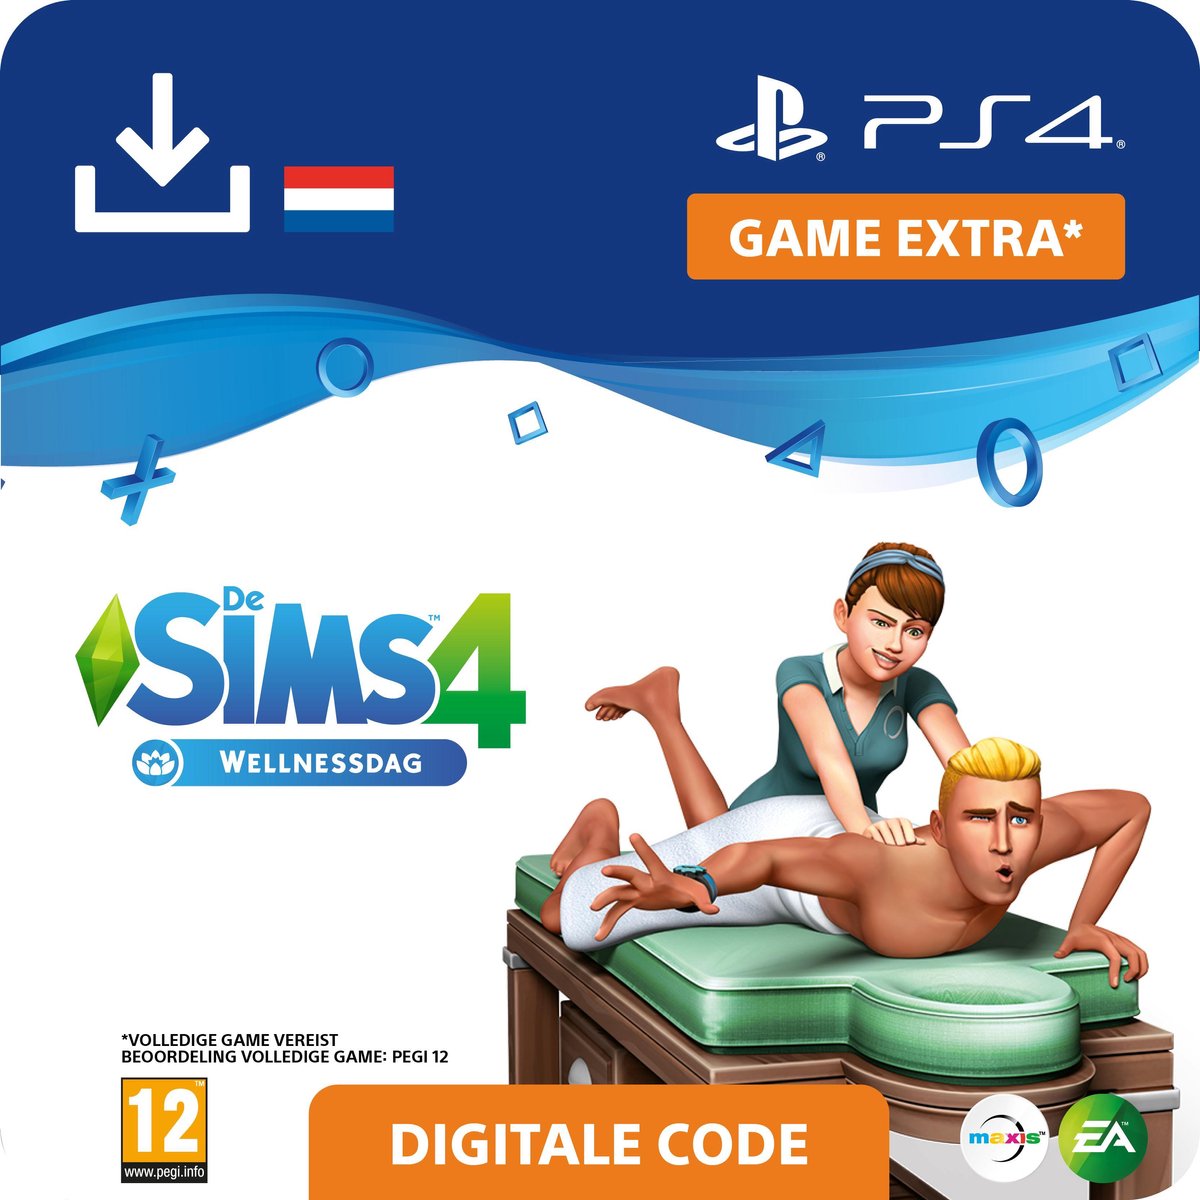 De Sims 4 - uitbreidingsset - Wellnessdag - NL - PS4 download - Sony digitaal